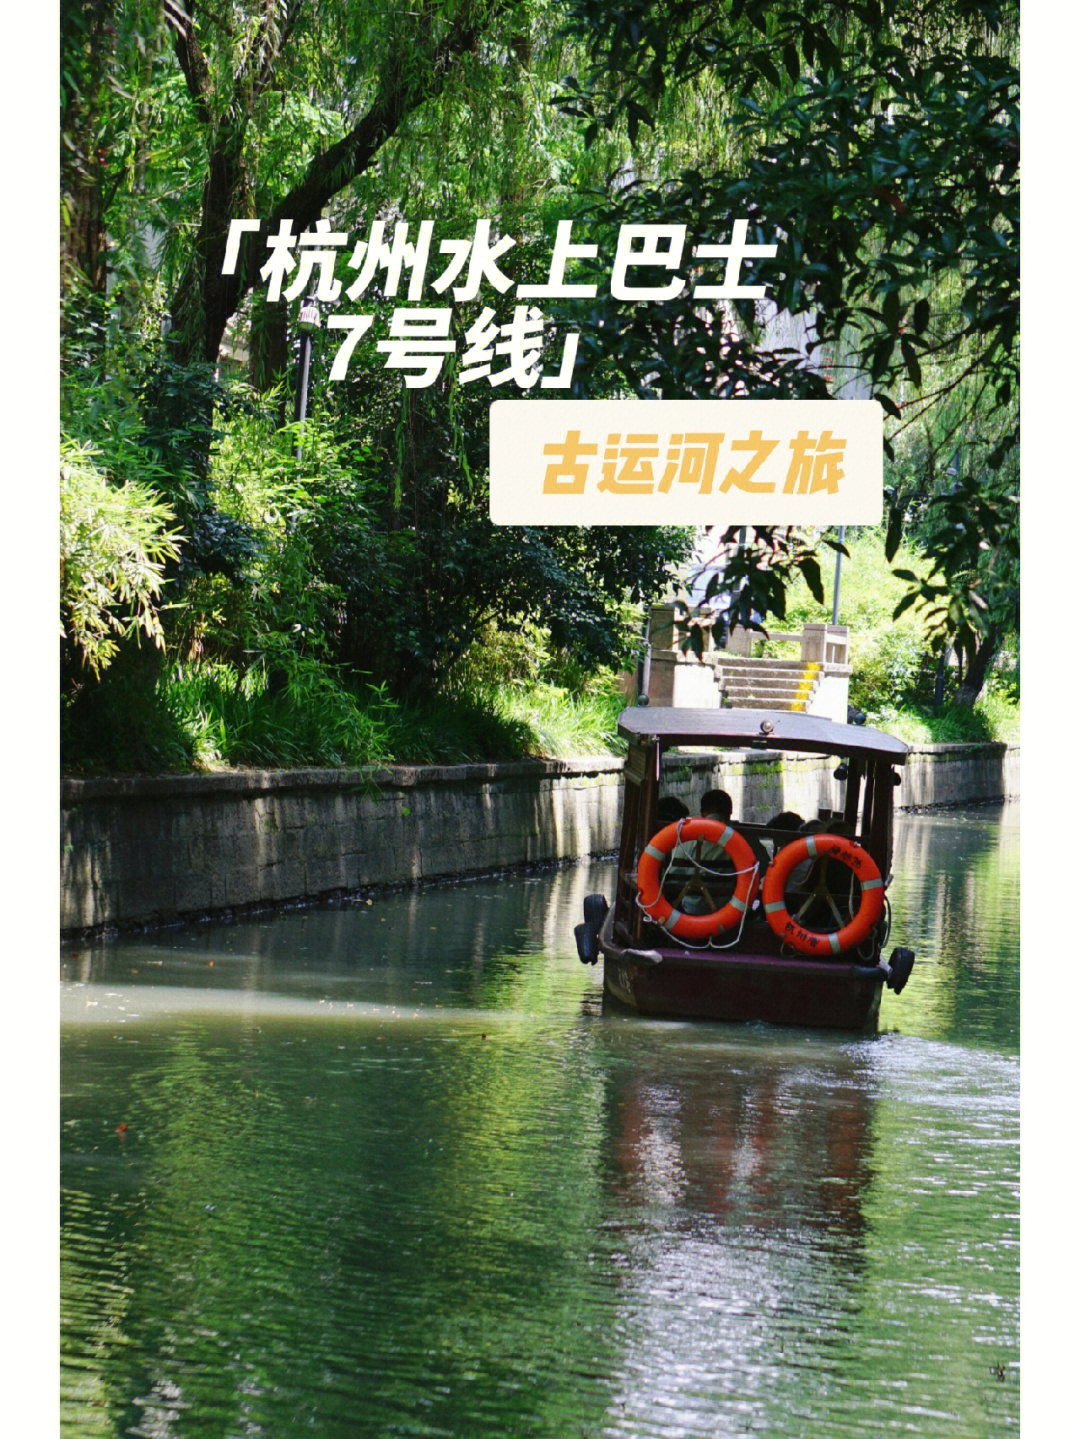 杭州水上巴士7号线—古运河之旅